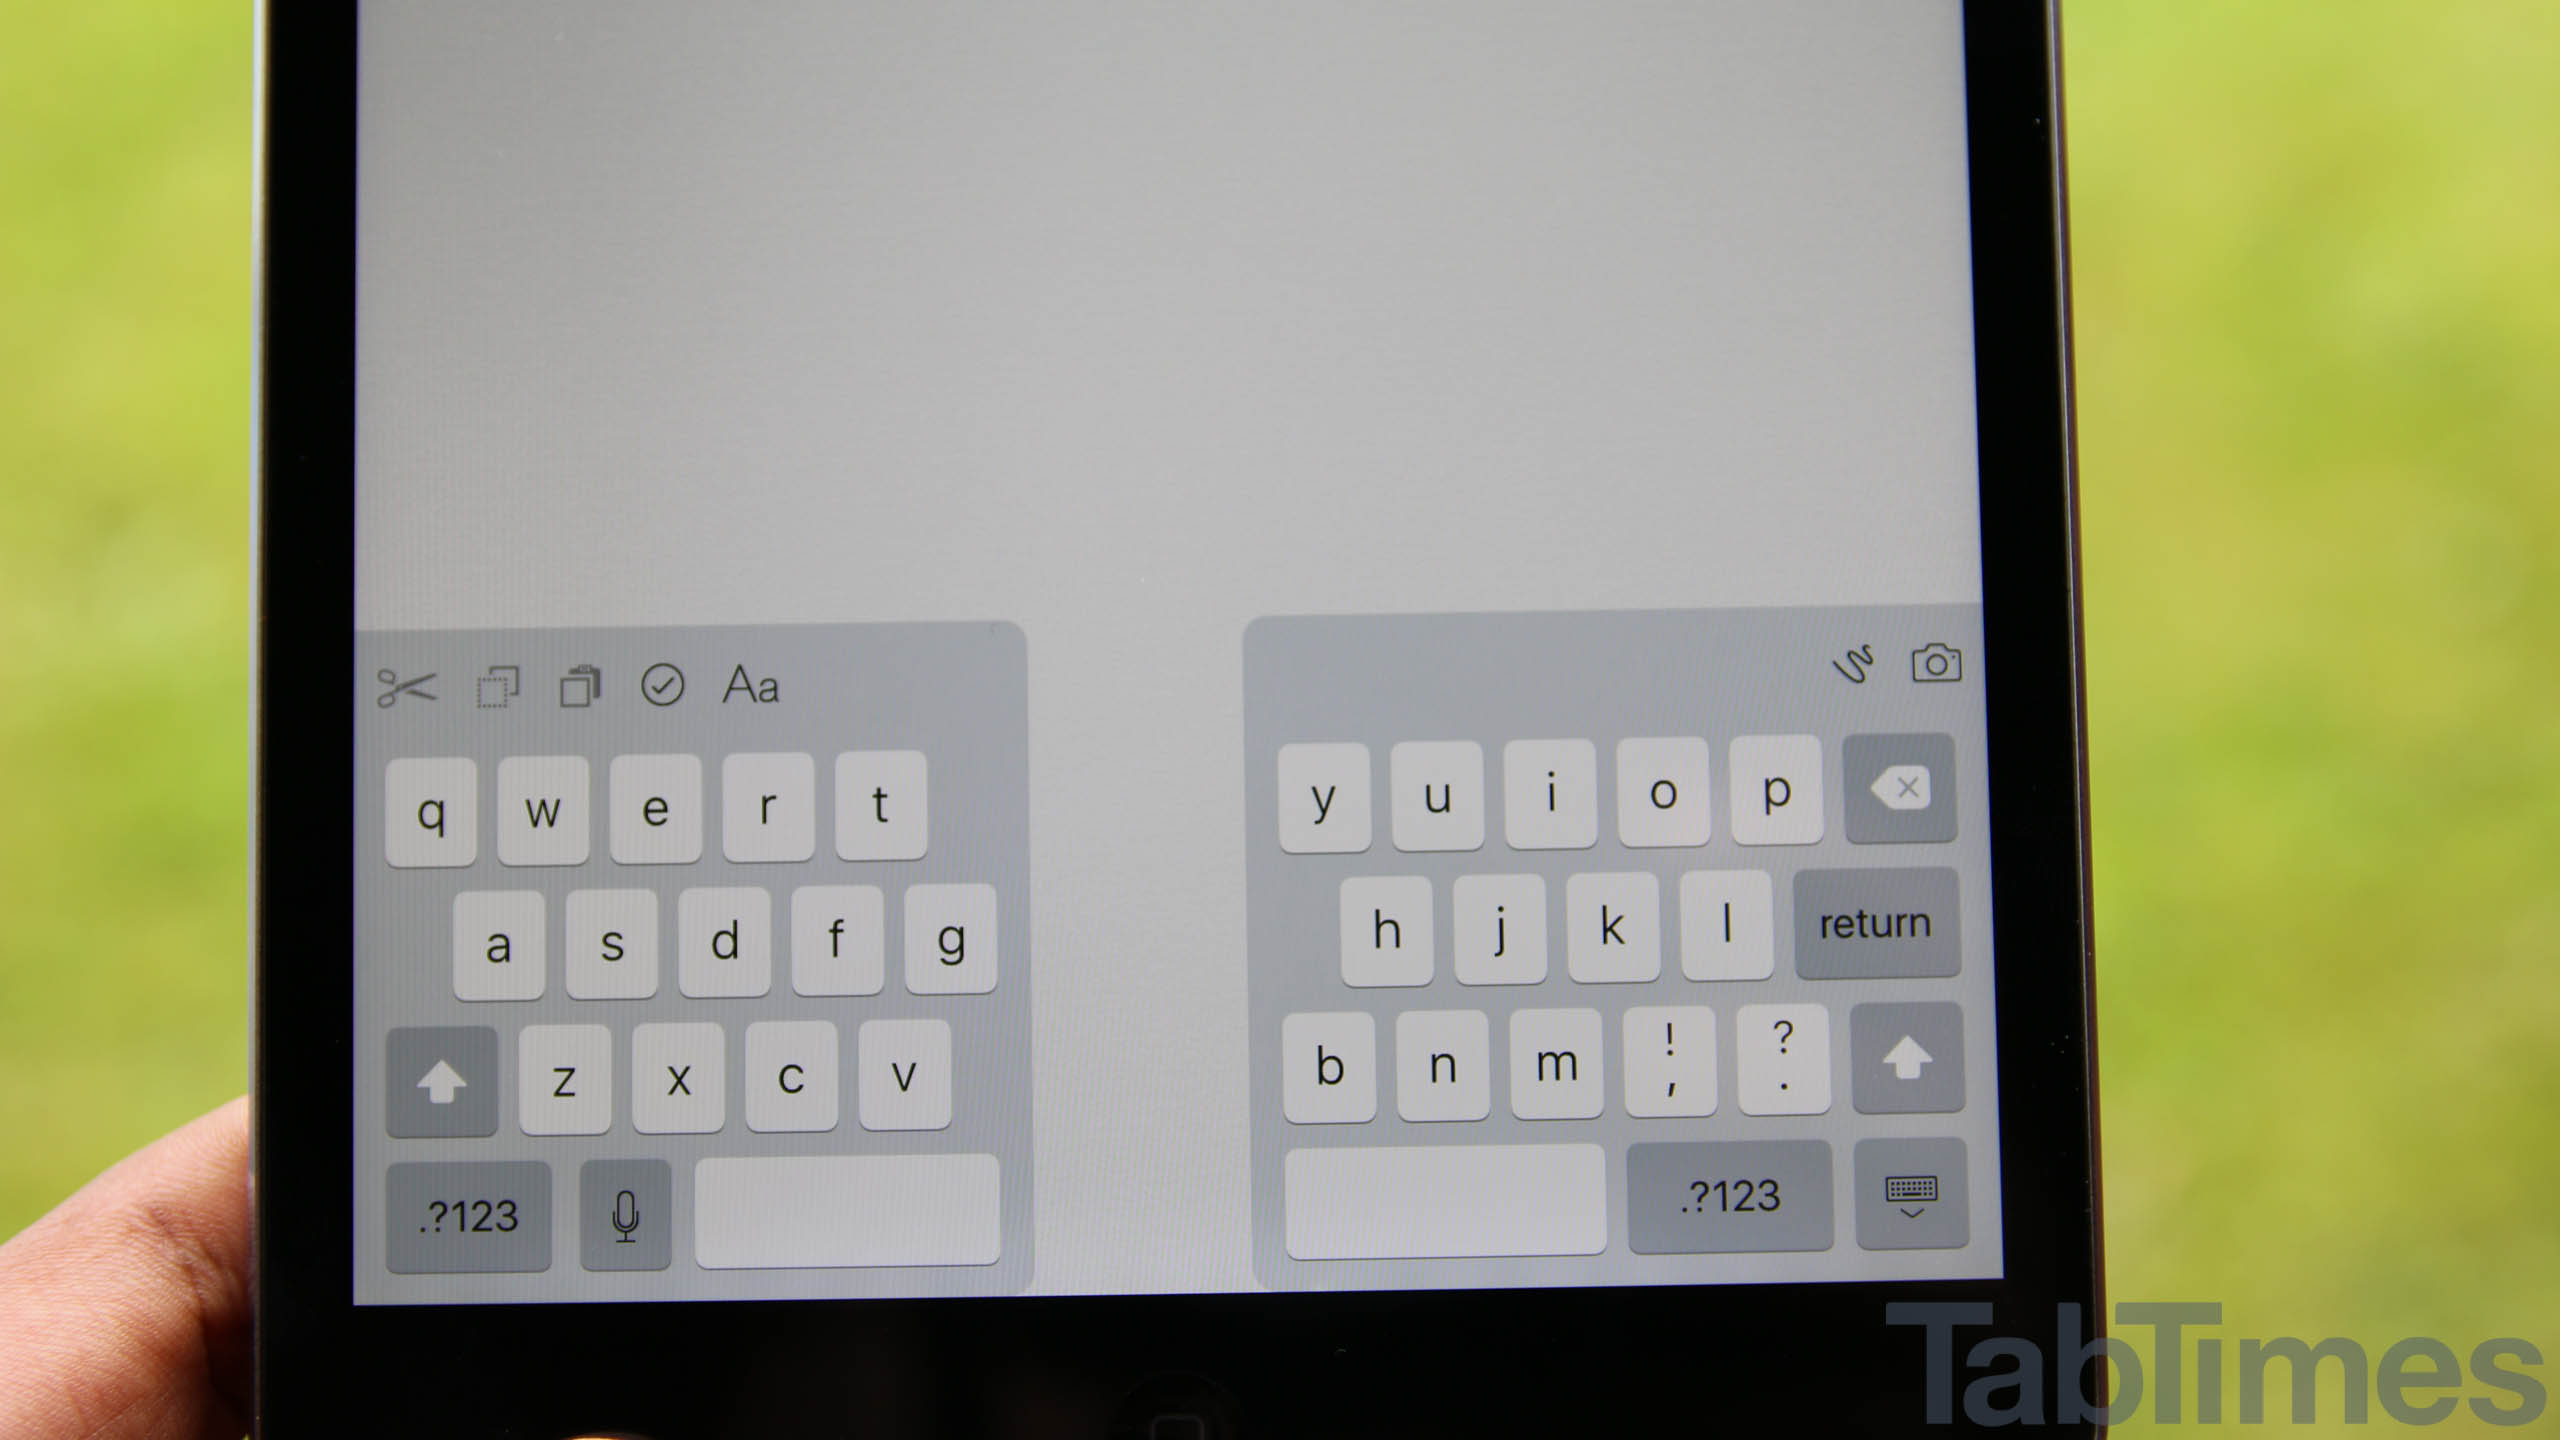 iPad-Mini-iOS-9-keyboard-shortcuts-2